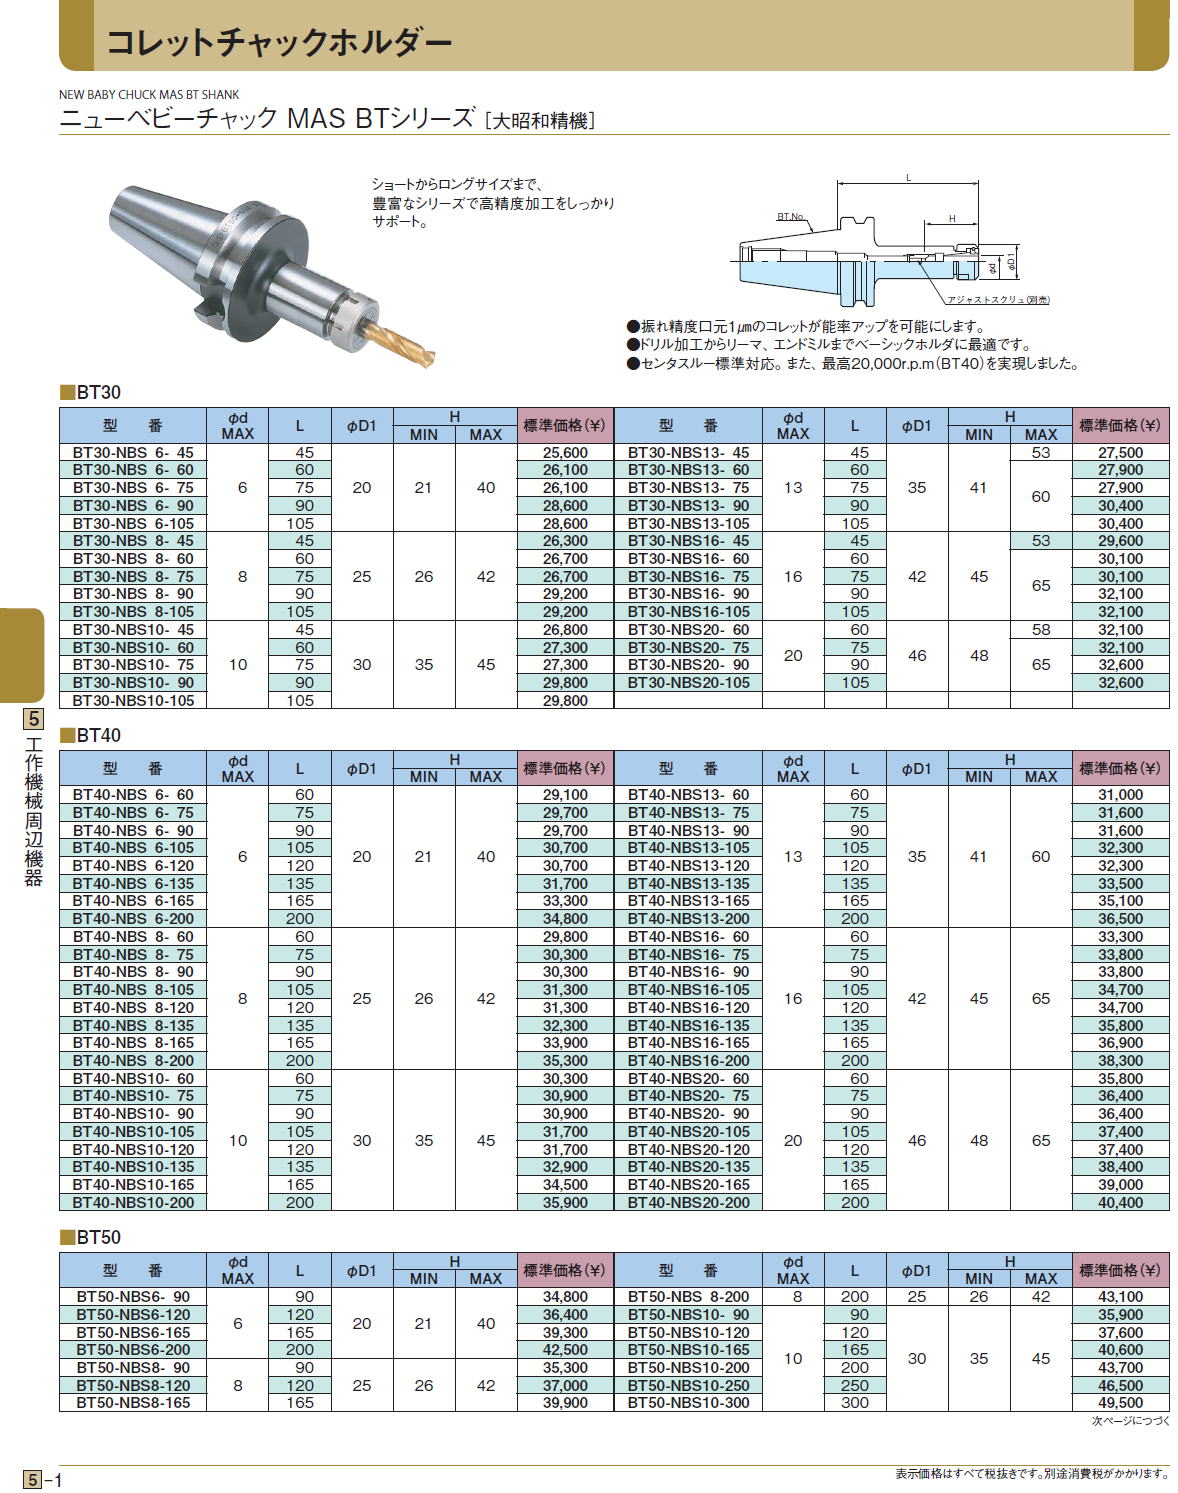 大昭和精機:ニューベビーチャック BT50-NBS10-90 切削 工具 チャック 電動工具